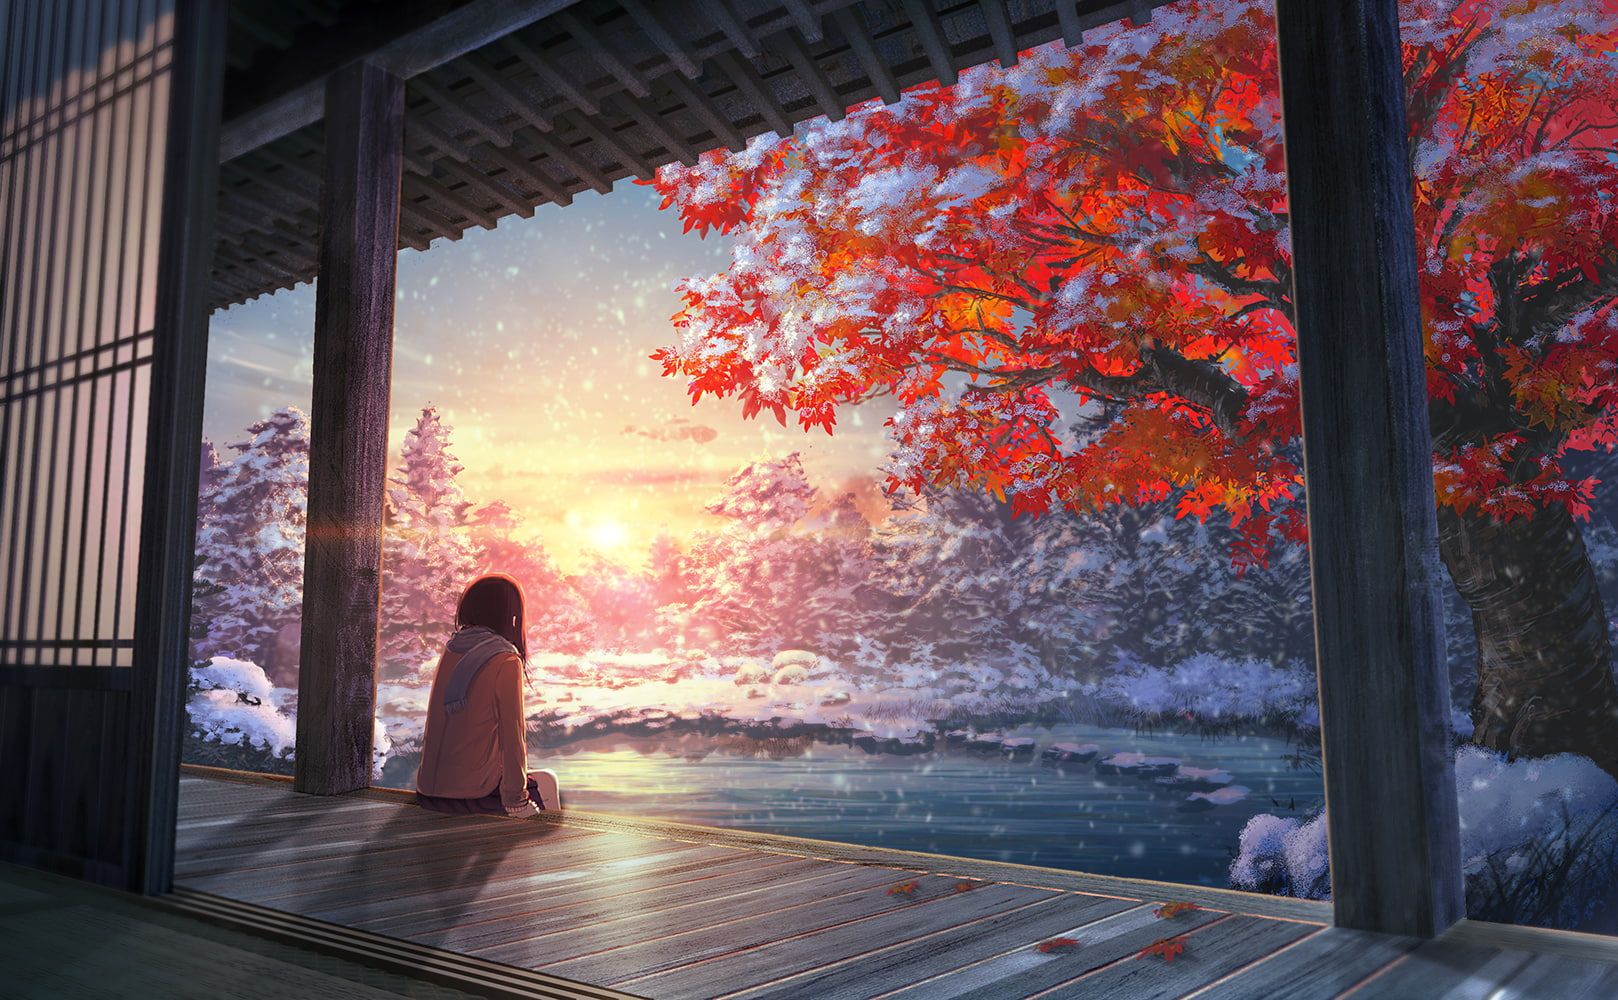 Chill Anime Nature - một bức tranh yên bình với thiên nhiên hoang sơ rực rỡ màu sắc. Bạn sẽ cảm nhận được sự thư thái và dịu dàng từ những tông màu pastel, cùng những nhân vật anime đáng yêu.